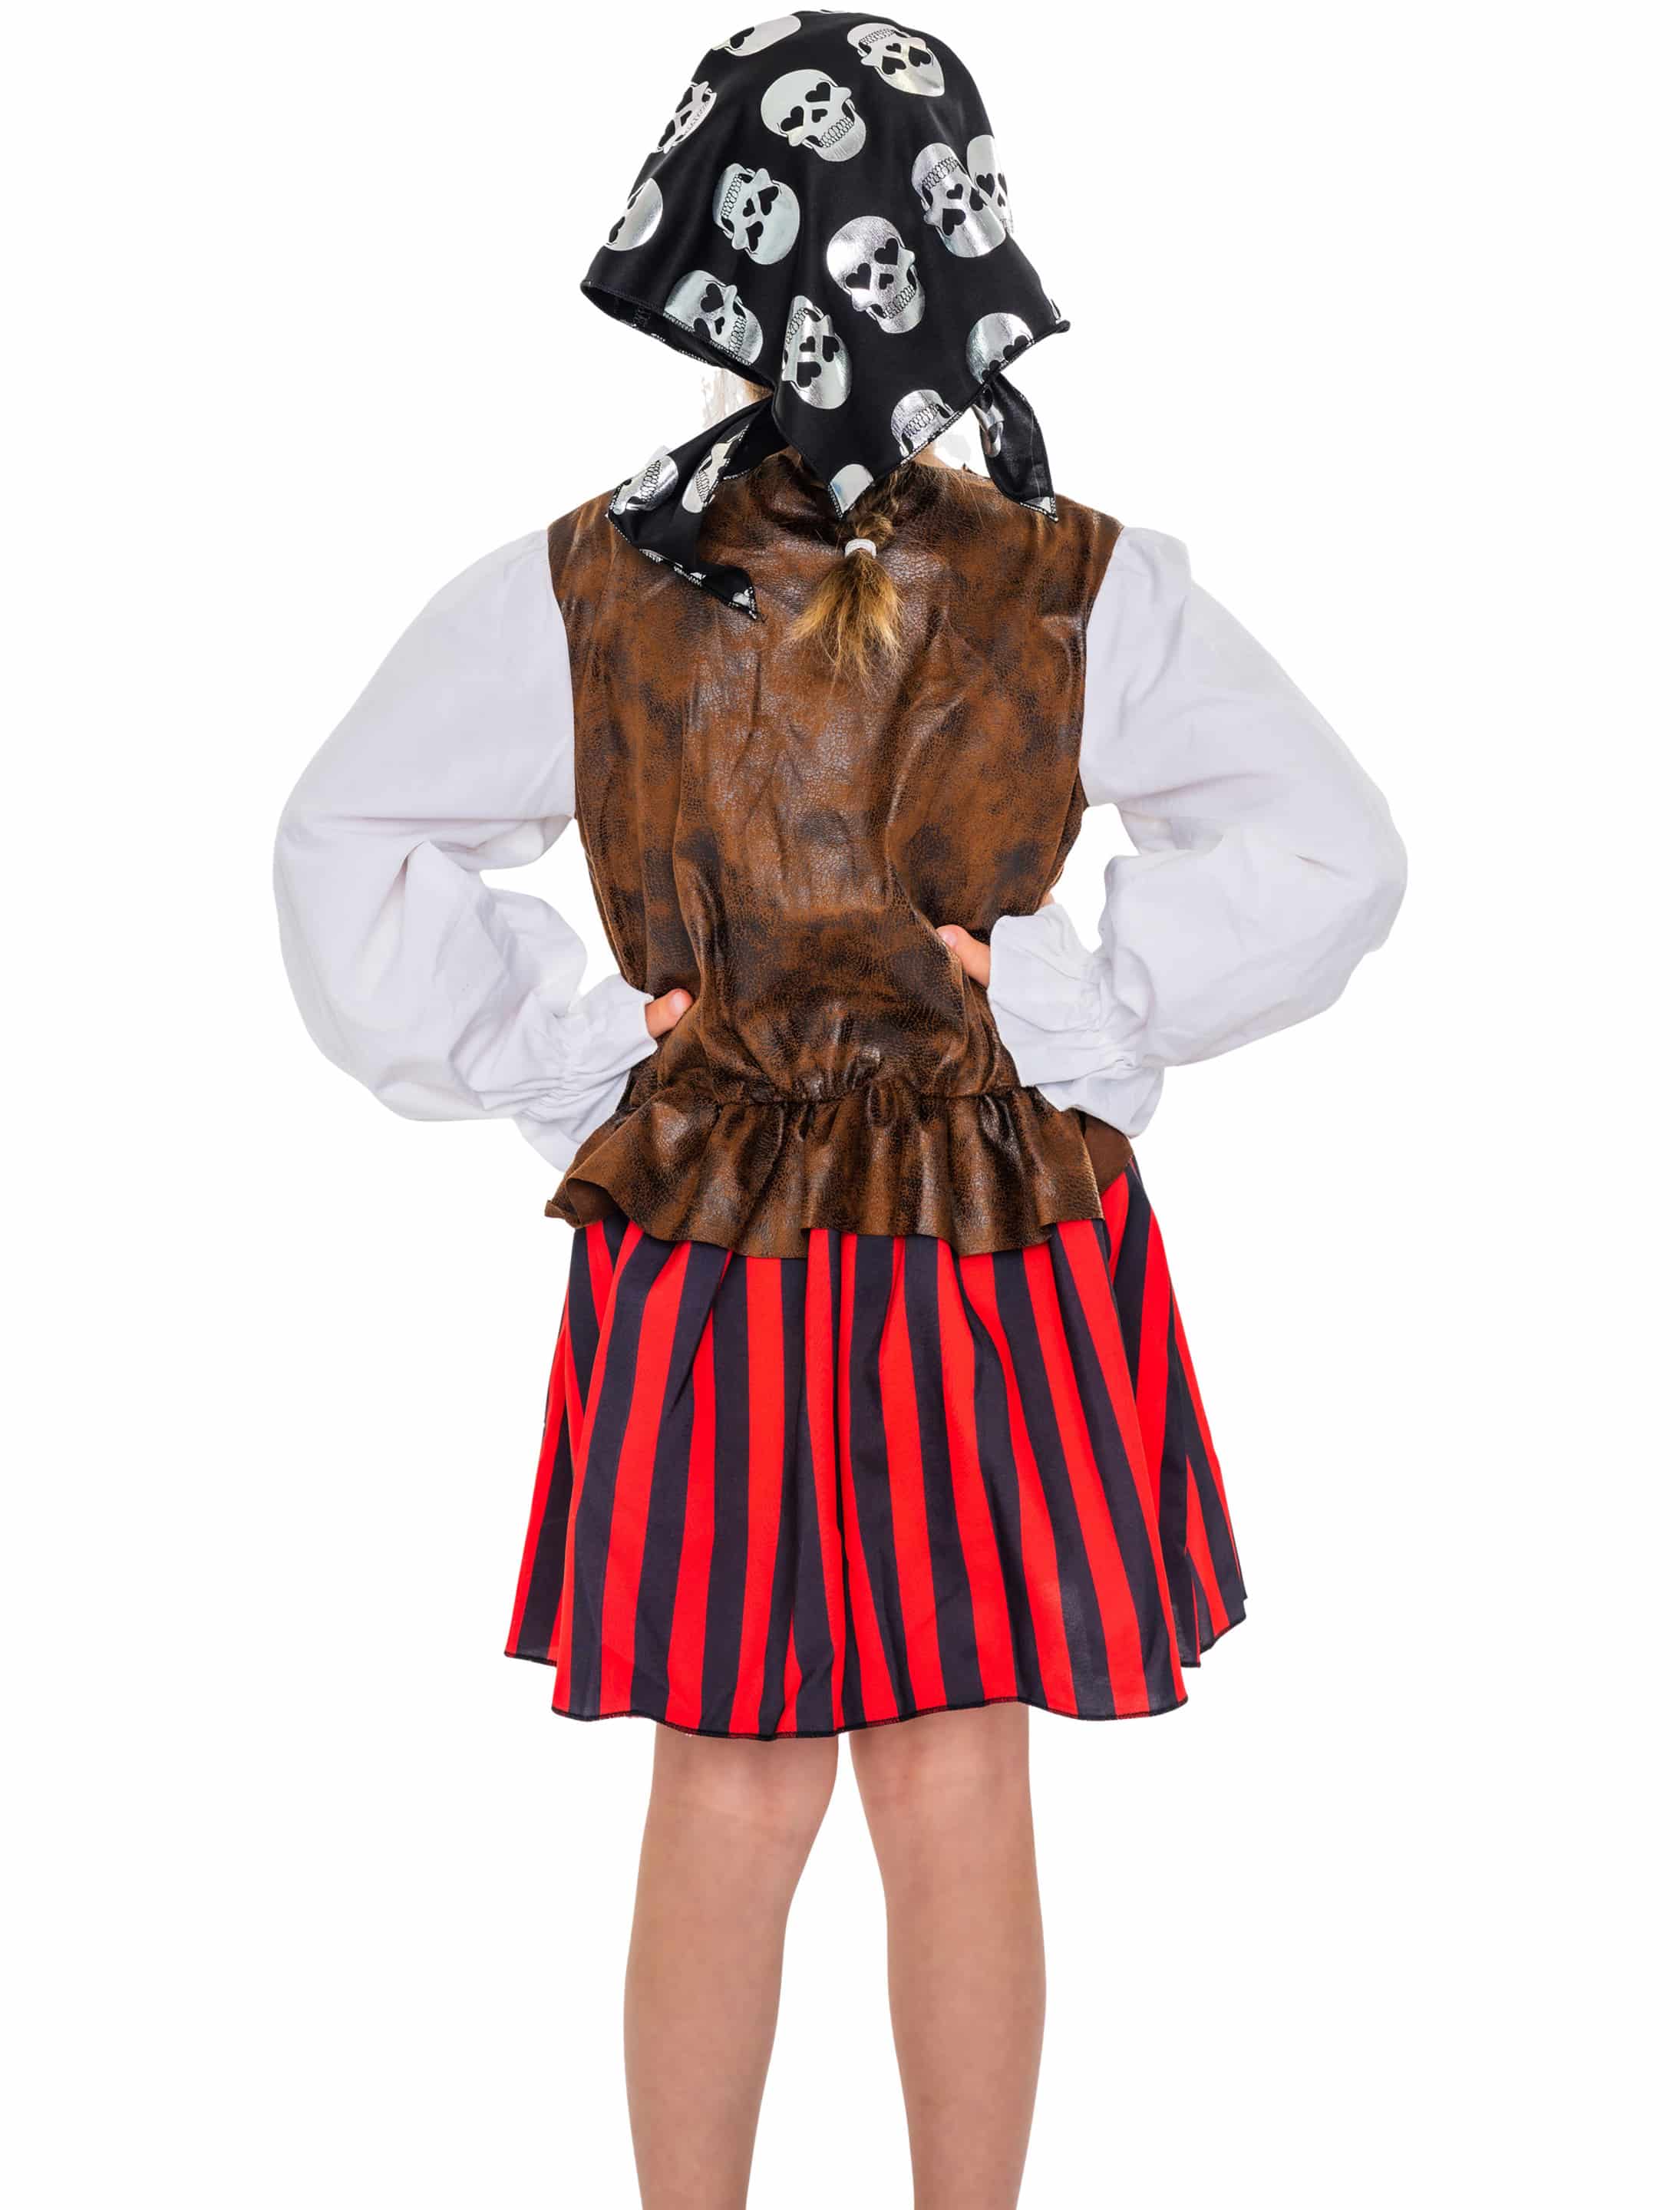 Kleid Piratin braun/rot 86-104